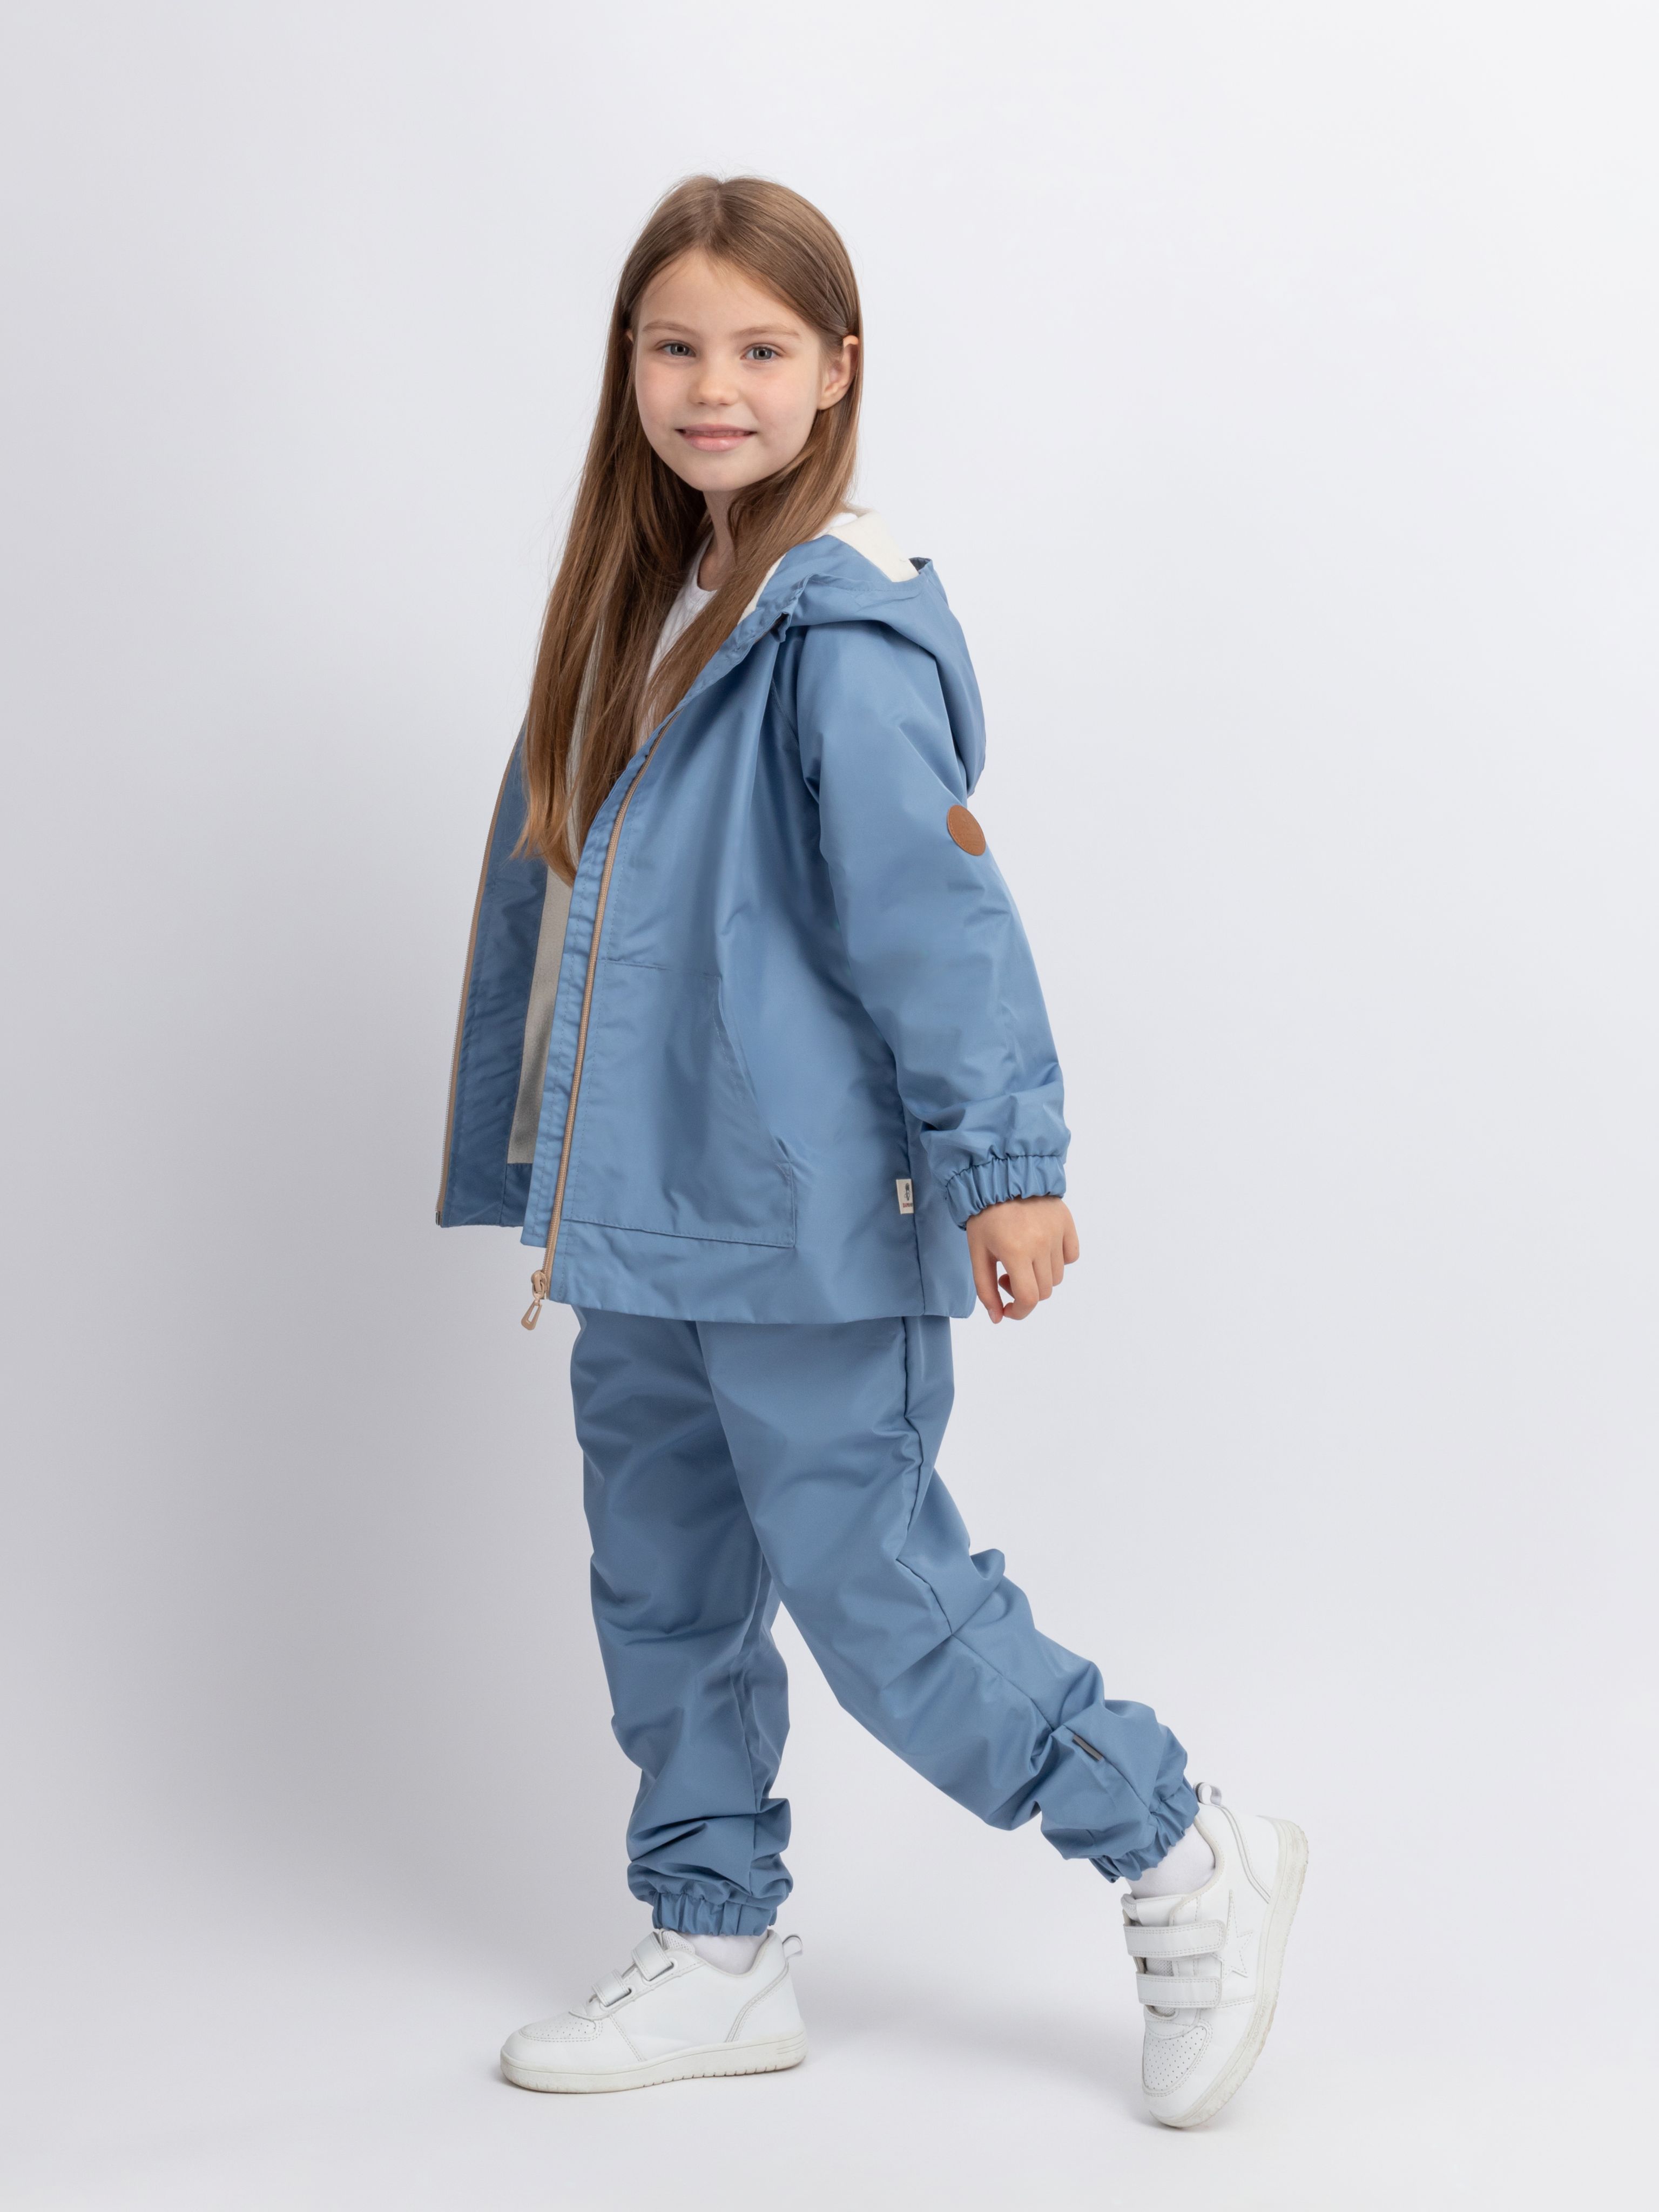 Комплект детской верхней одежды Даримир Велта, серо-голубой, 80